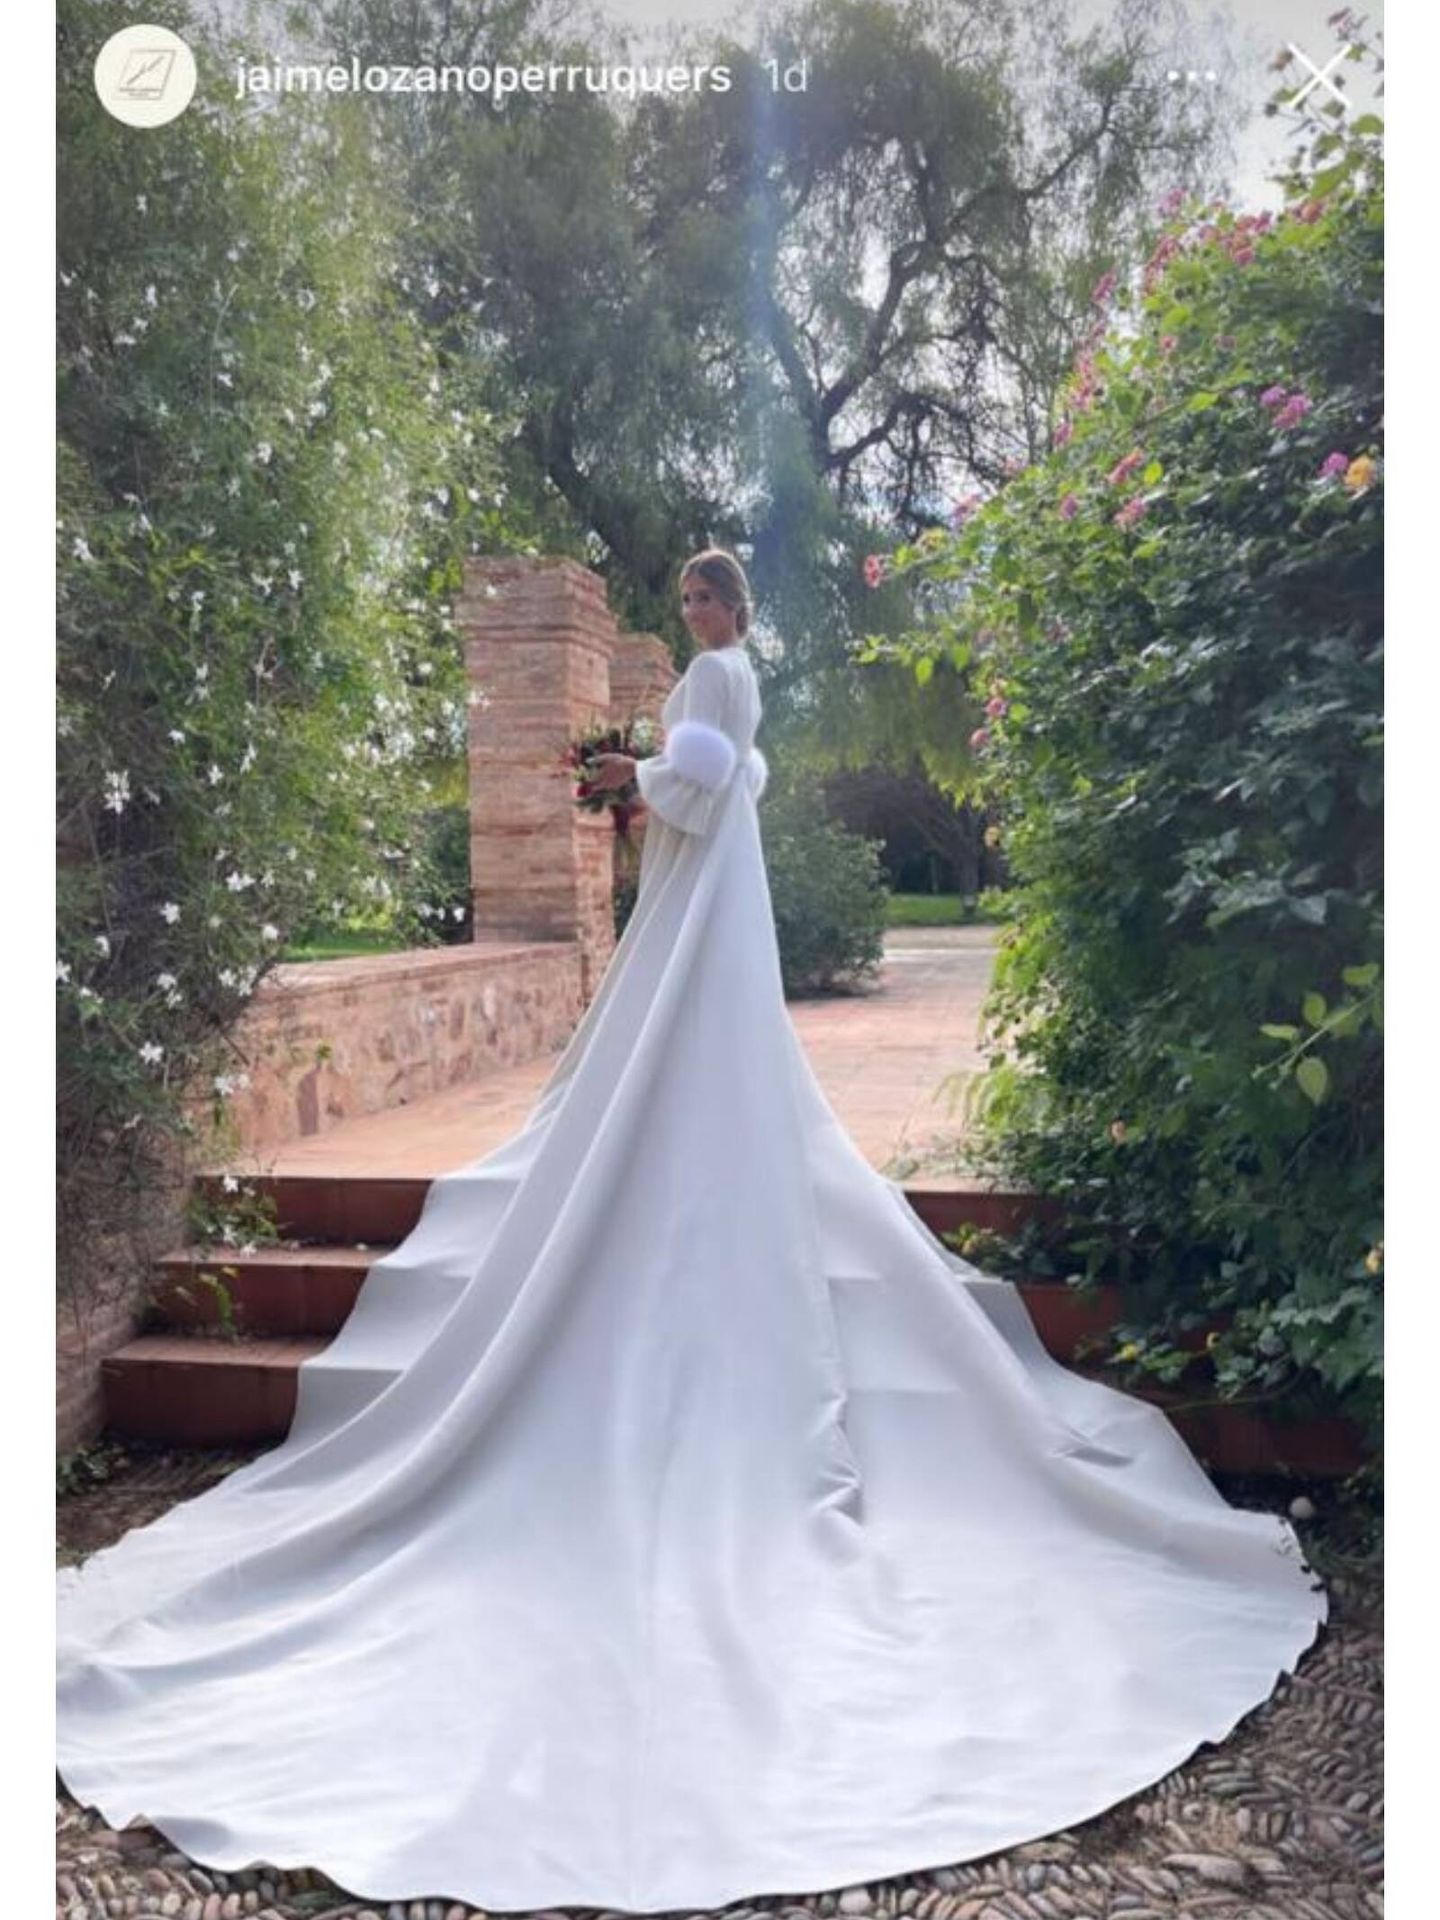 María y su vestido de novia de From Lista with Love. (Instagram)